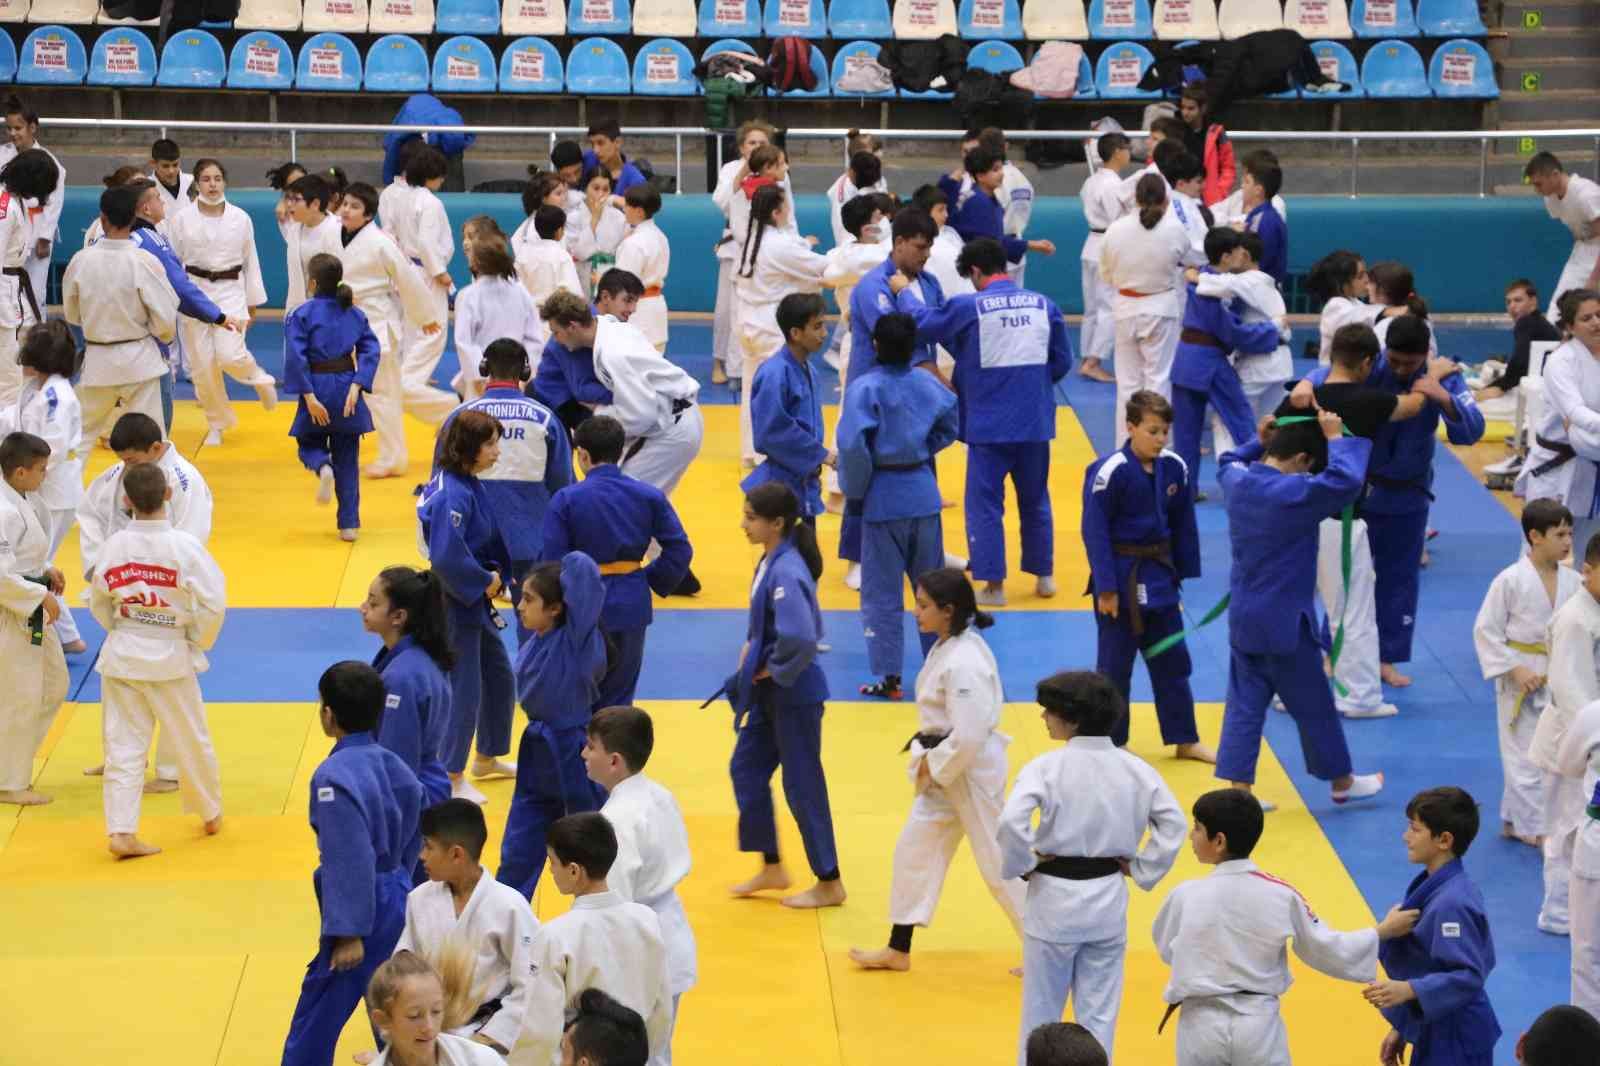 Uluslararası Judo Turnuvası, 500 sporcunun katılımıyla başladı #edirne